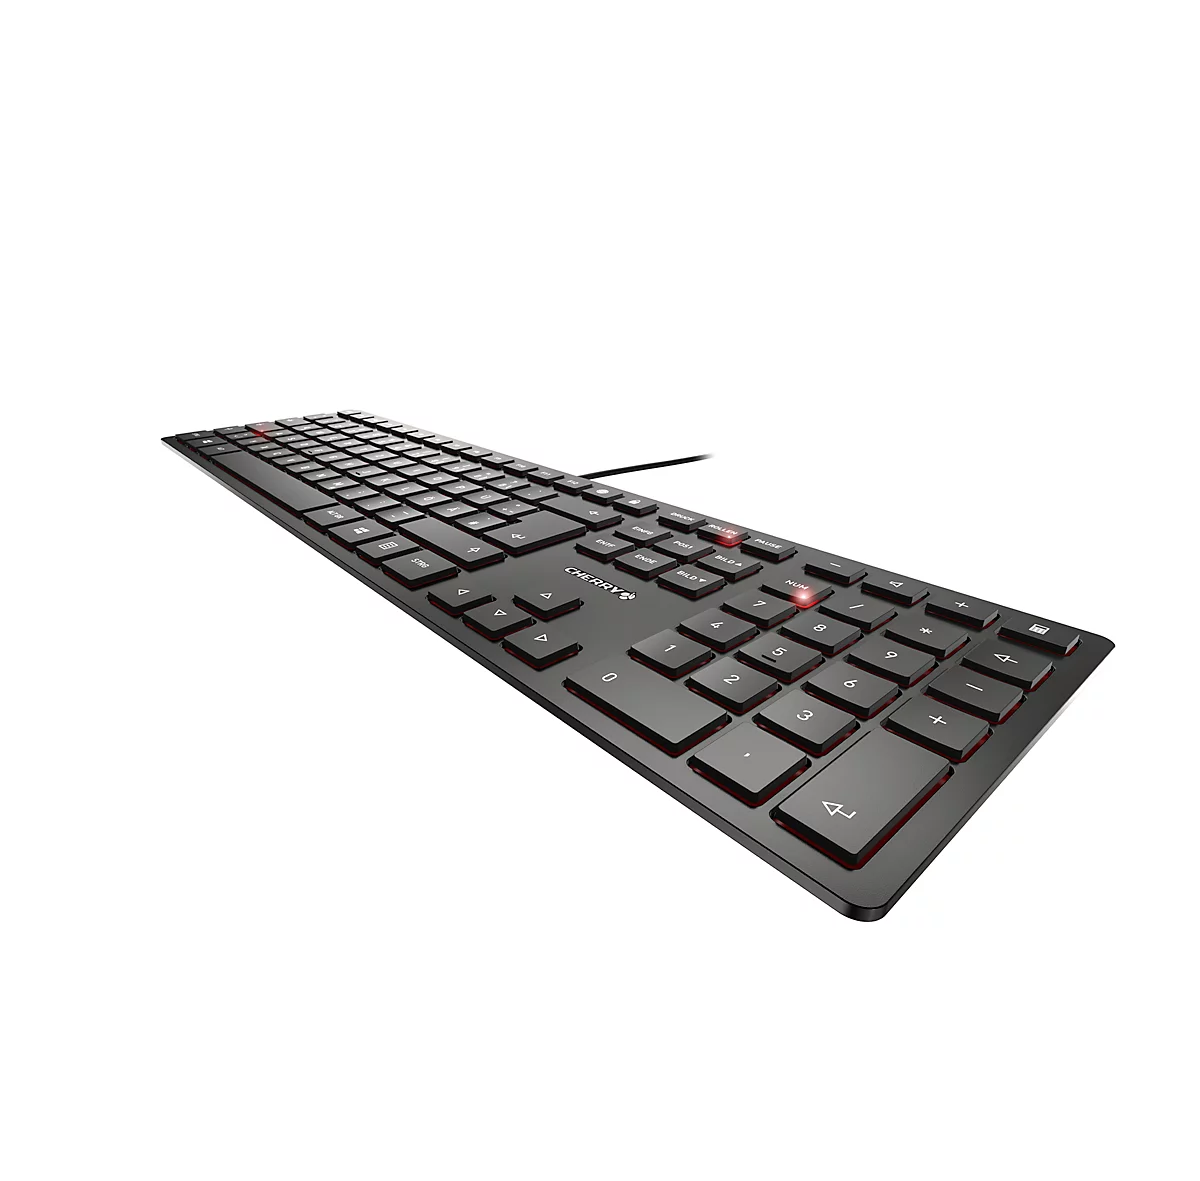 Cherry Tastatur KC 6000 Slim, QWERTZ, 105 + 6 Tasten, Status LEDs für CAPS LOCK, NUM & SCROLL, schwarz